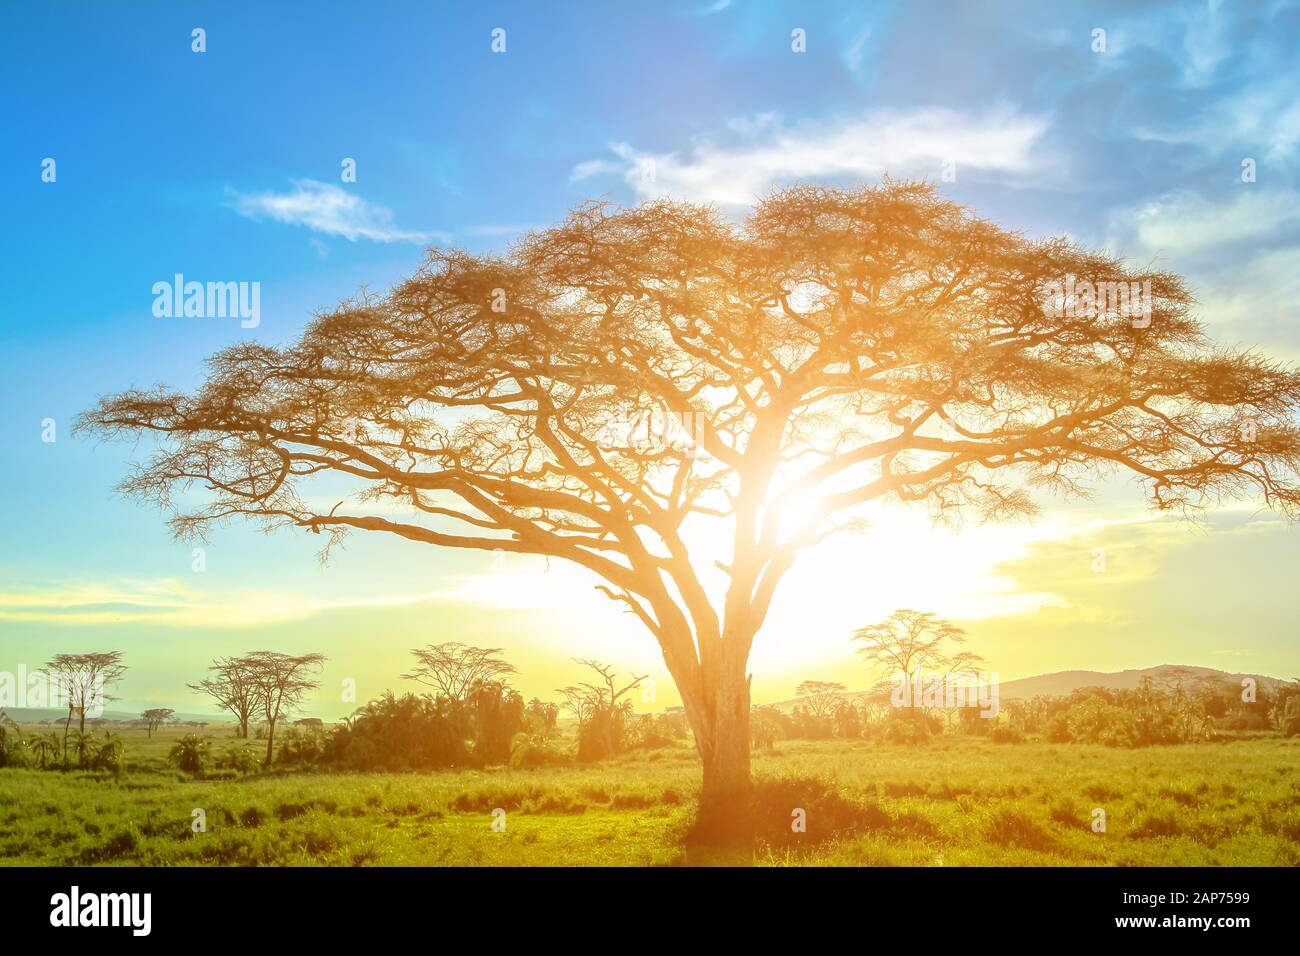 Acacia africana al amanecer en la sabana africana del Serengueti wildlife area de Tanzania, África Oriental. Escenas de safari africano en el Serengeti Foto de stock